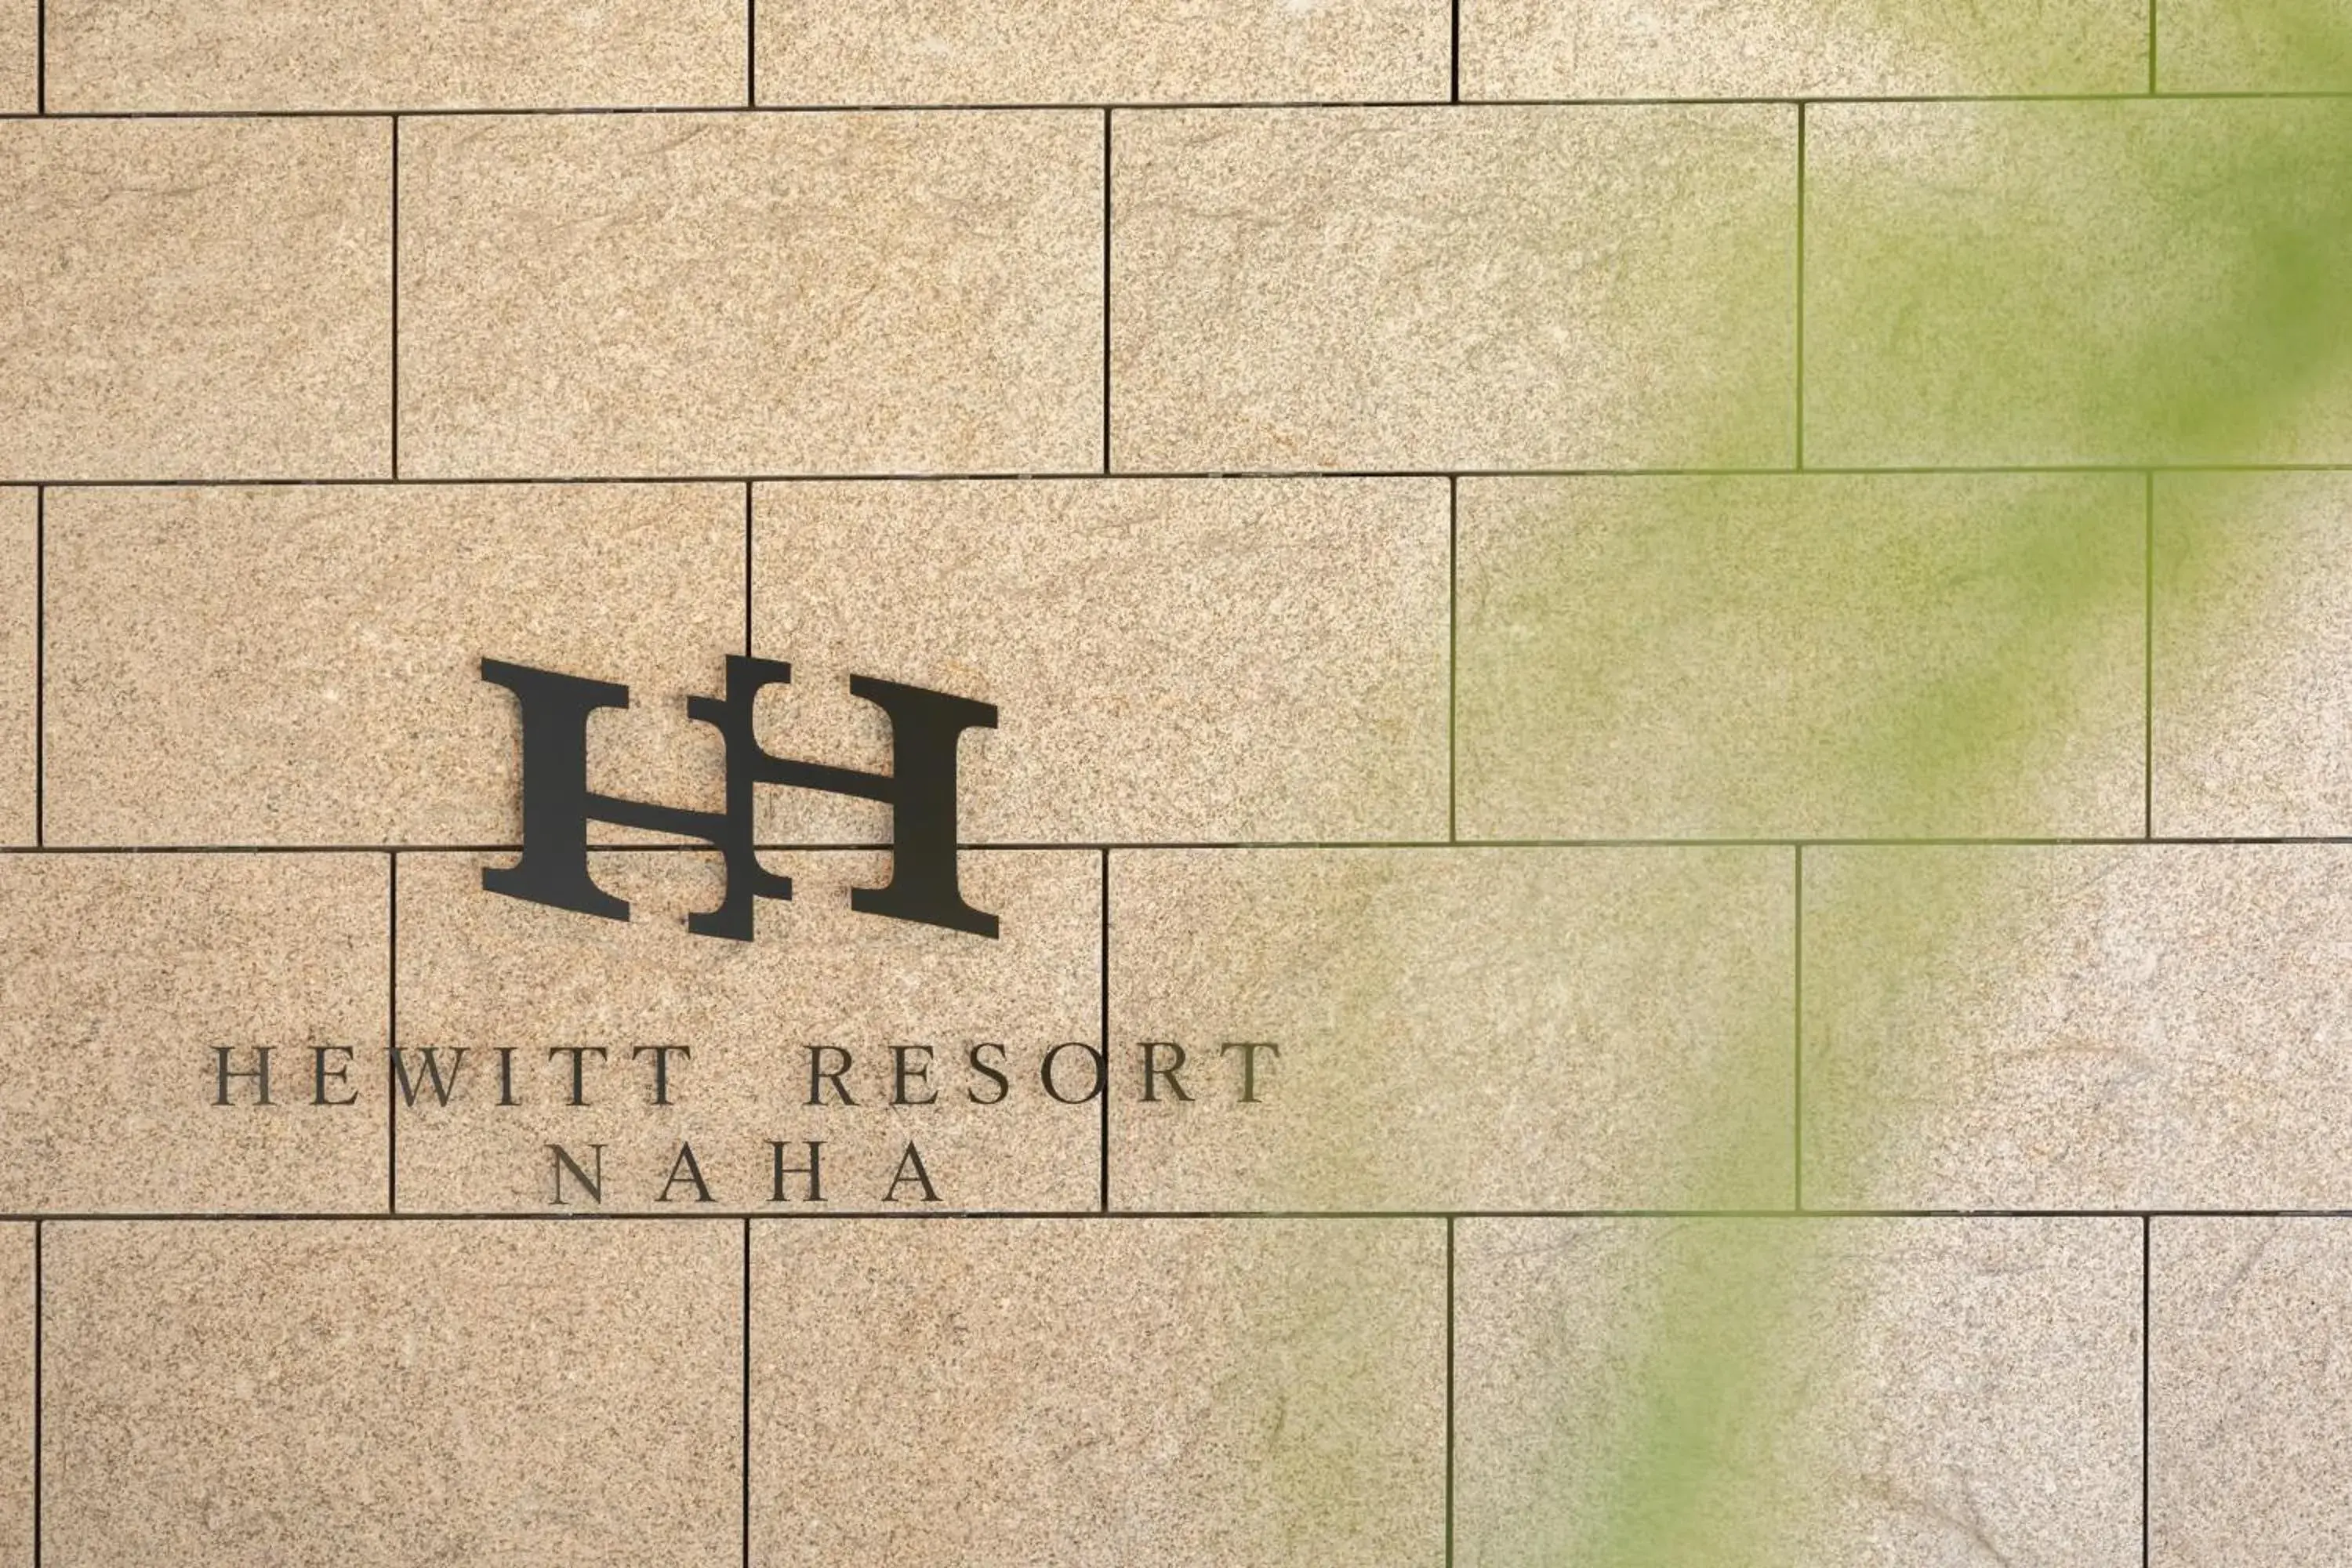 Facade/entrance in Hewitt Resort Naha 